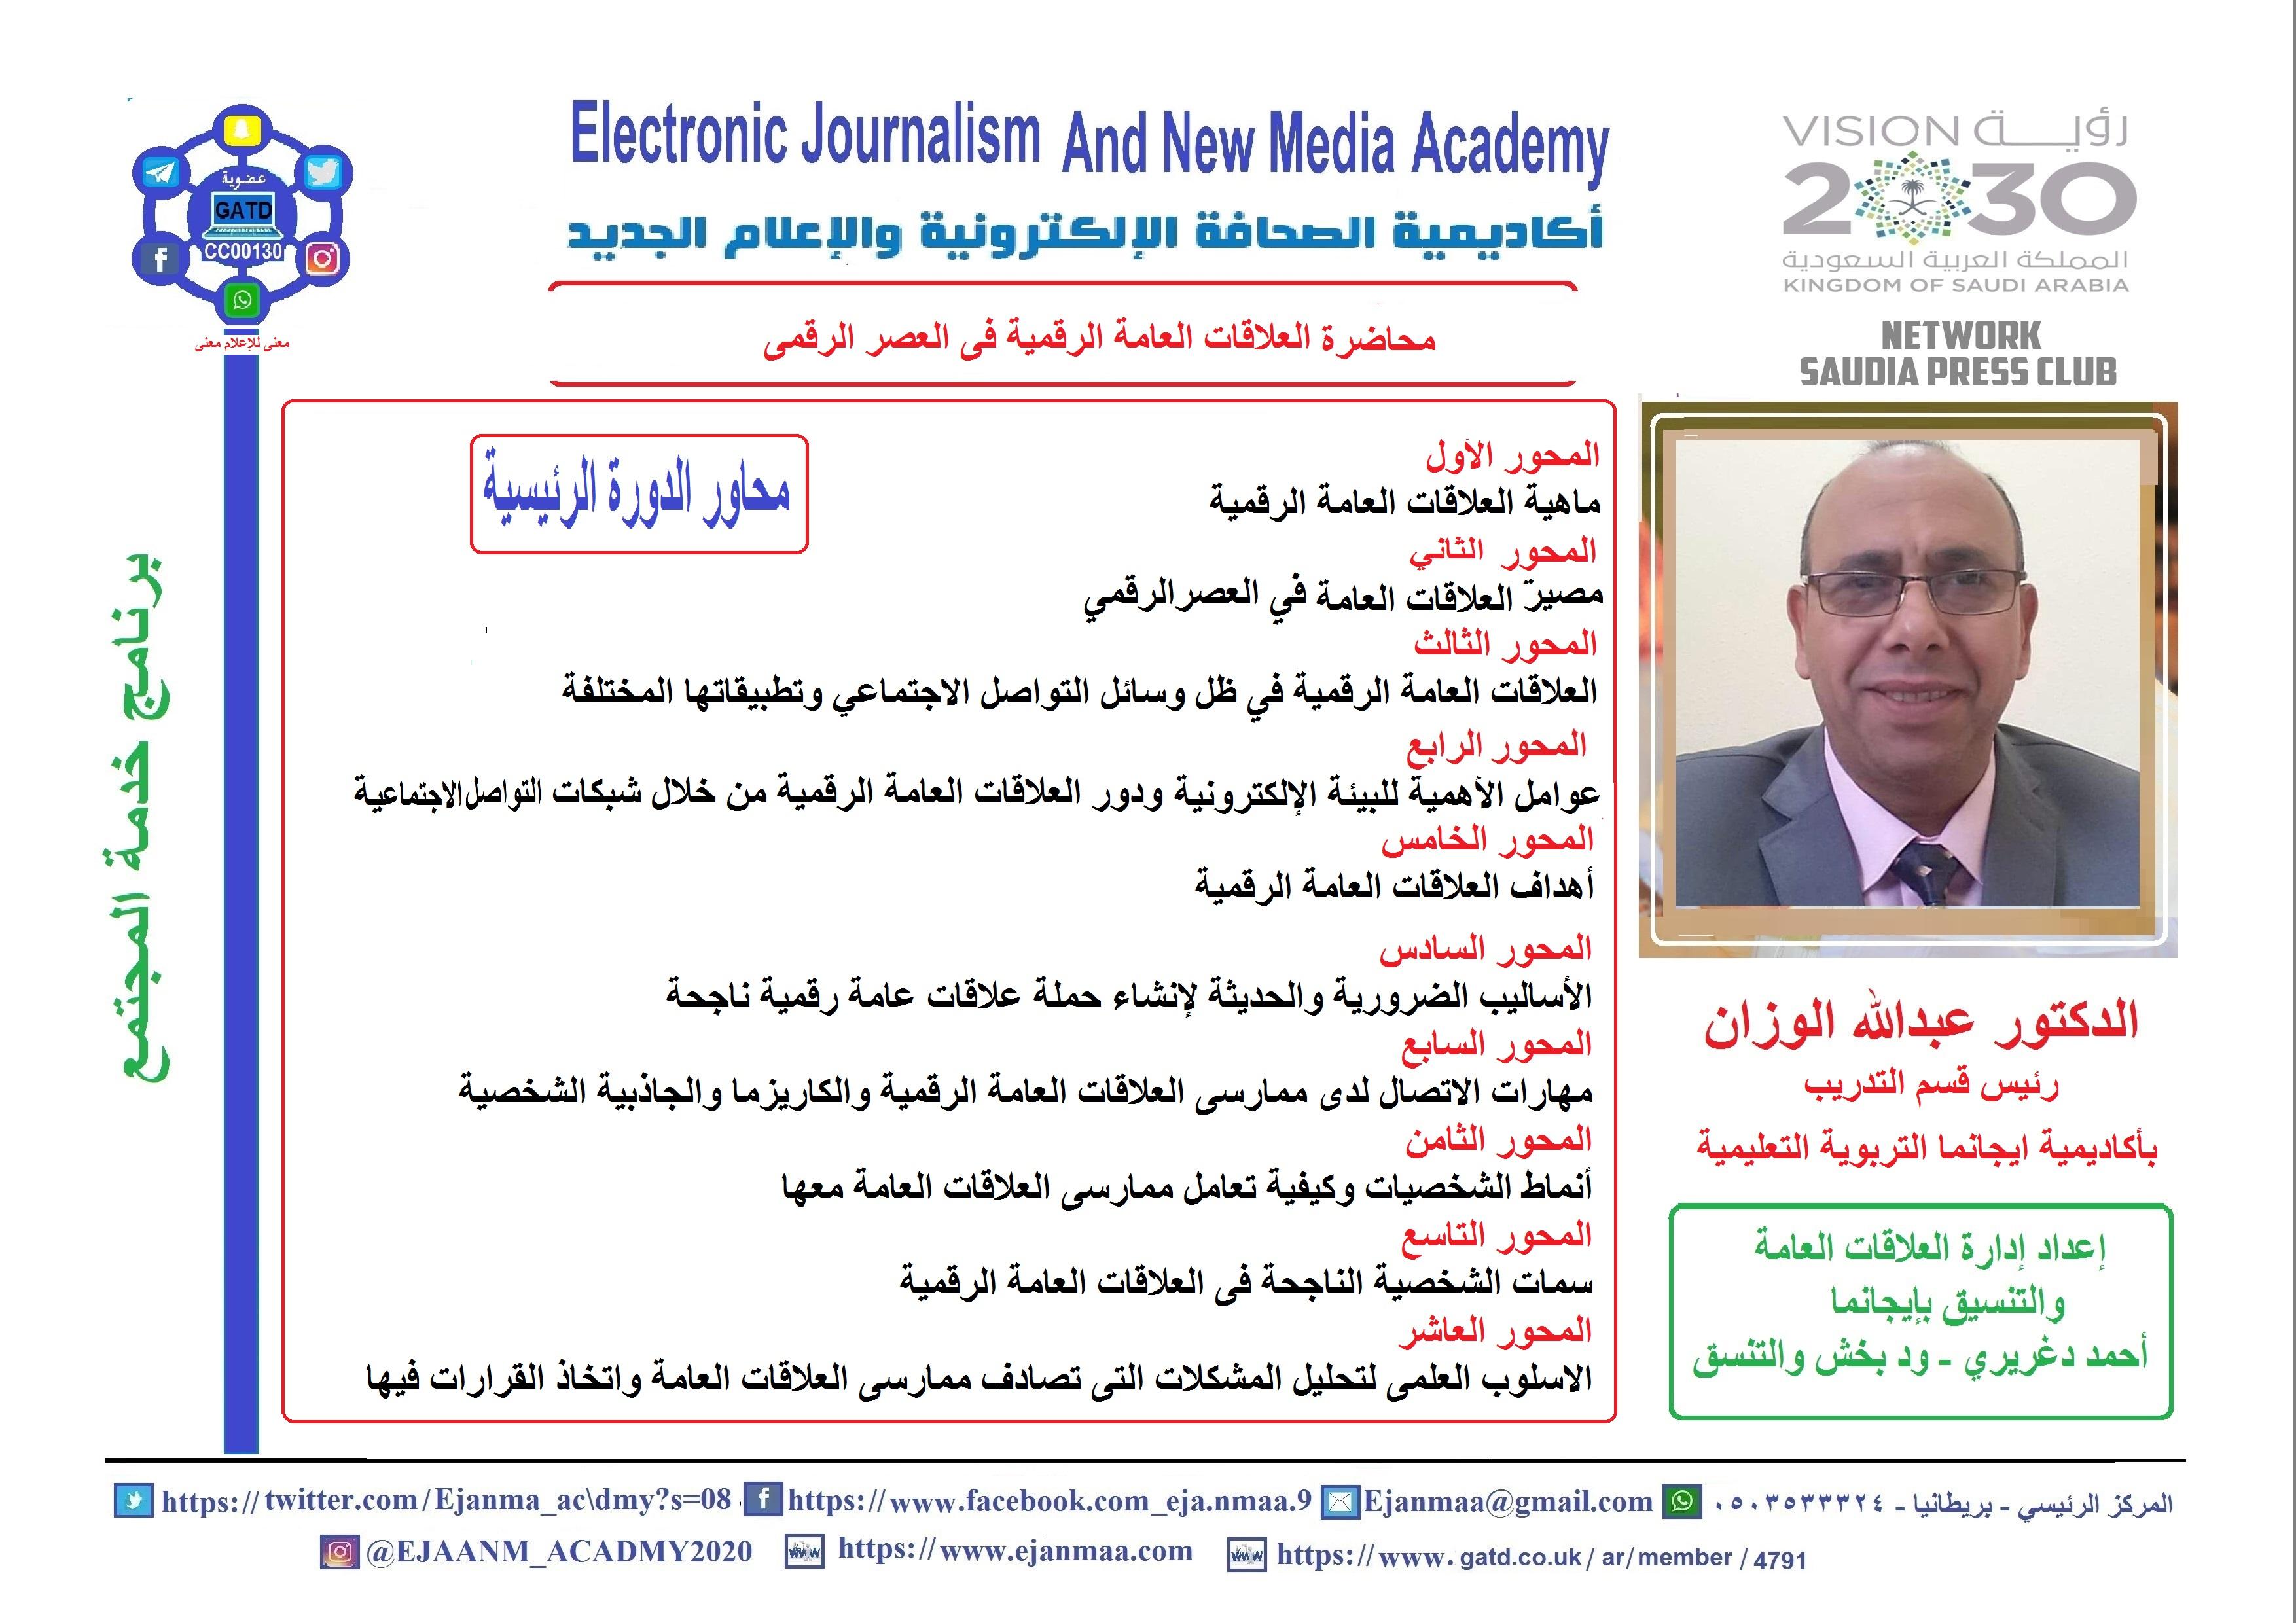  ايجانما تستضيف د. عبدالله الوزان فى أولى محاضراته المتميزة بعنوان العلاقات العامة الرقمية في العصر الرقمي